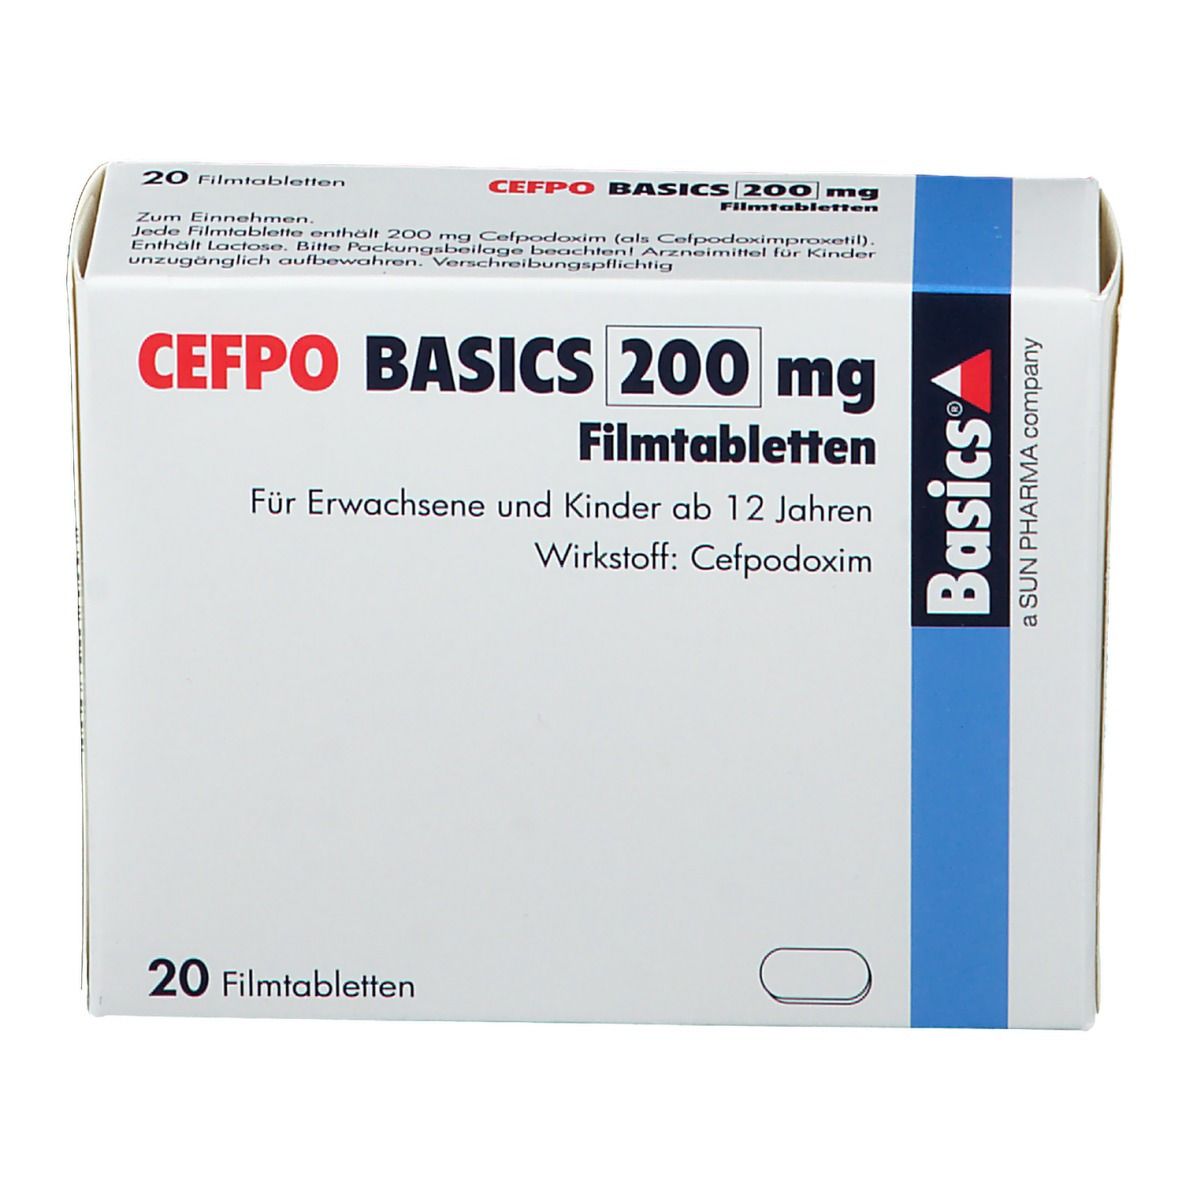 CEFPO BASICS 200 mg